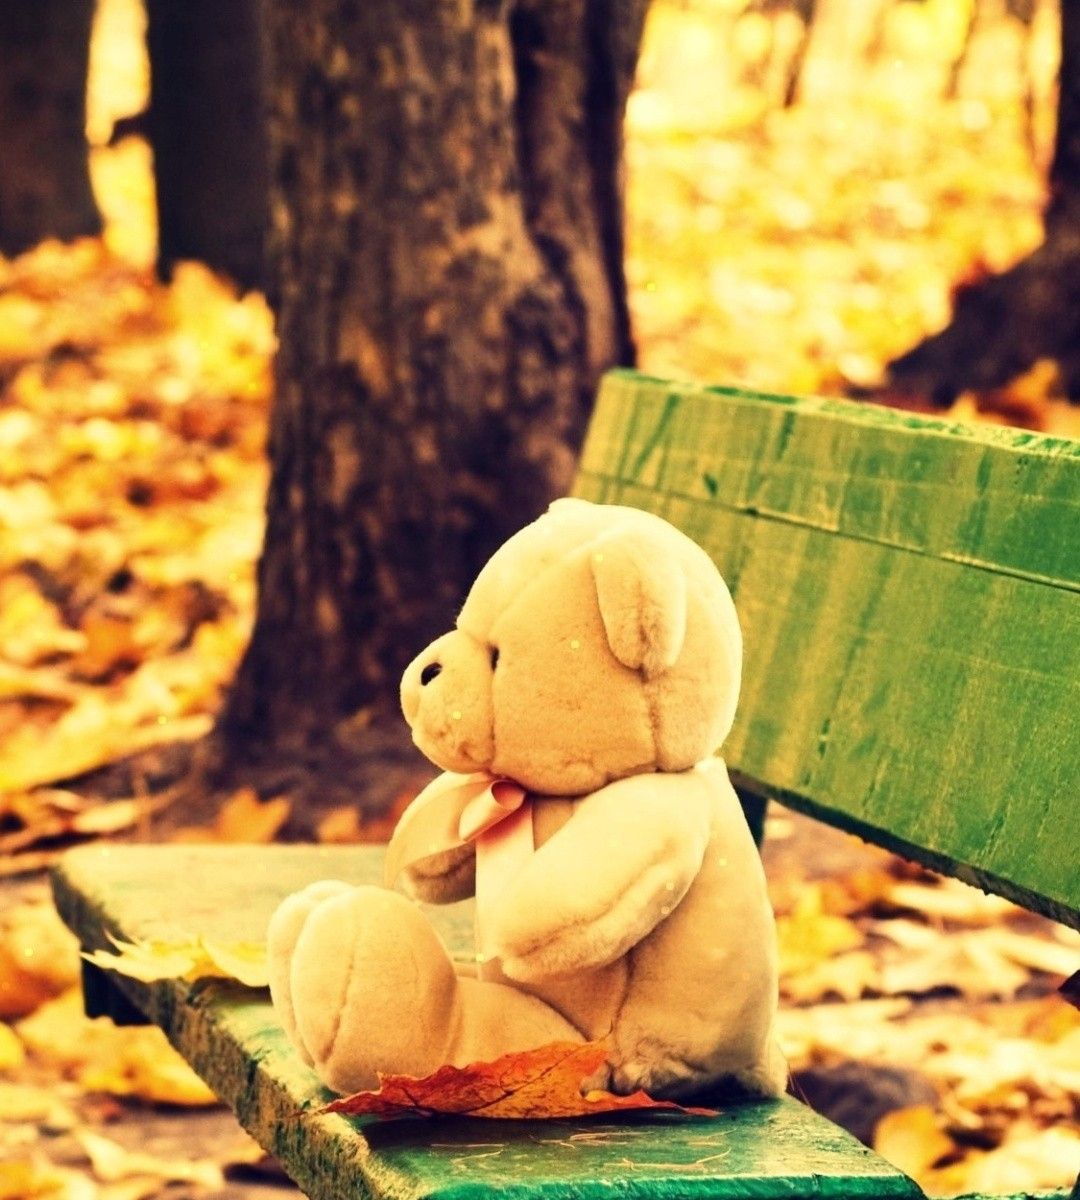 sad teddy bear hd wallpaper,leaf,teddy bear,stuffed toy,toy,smile